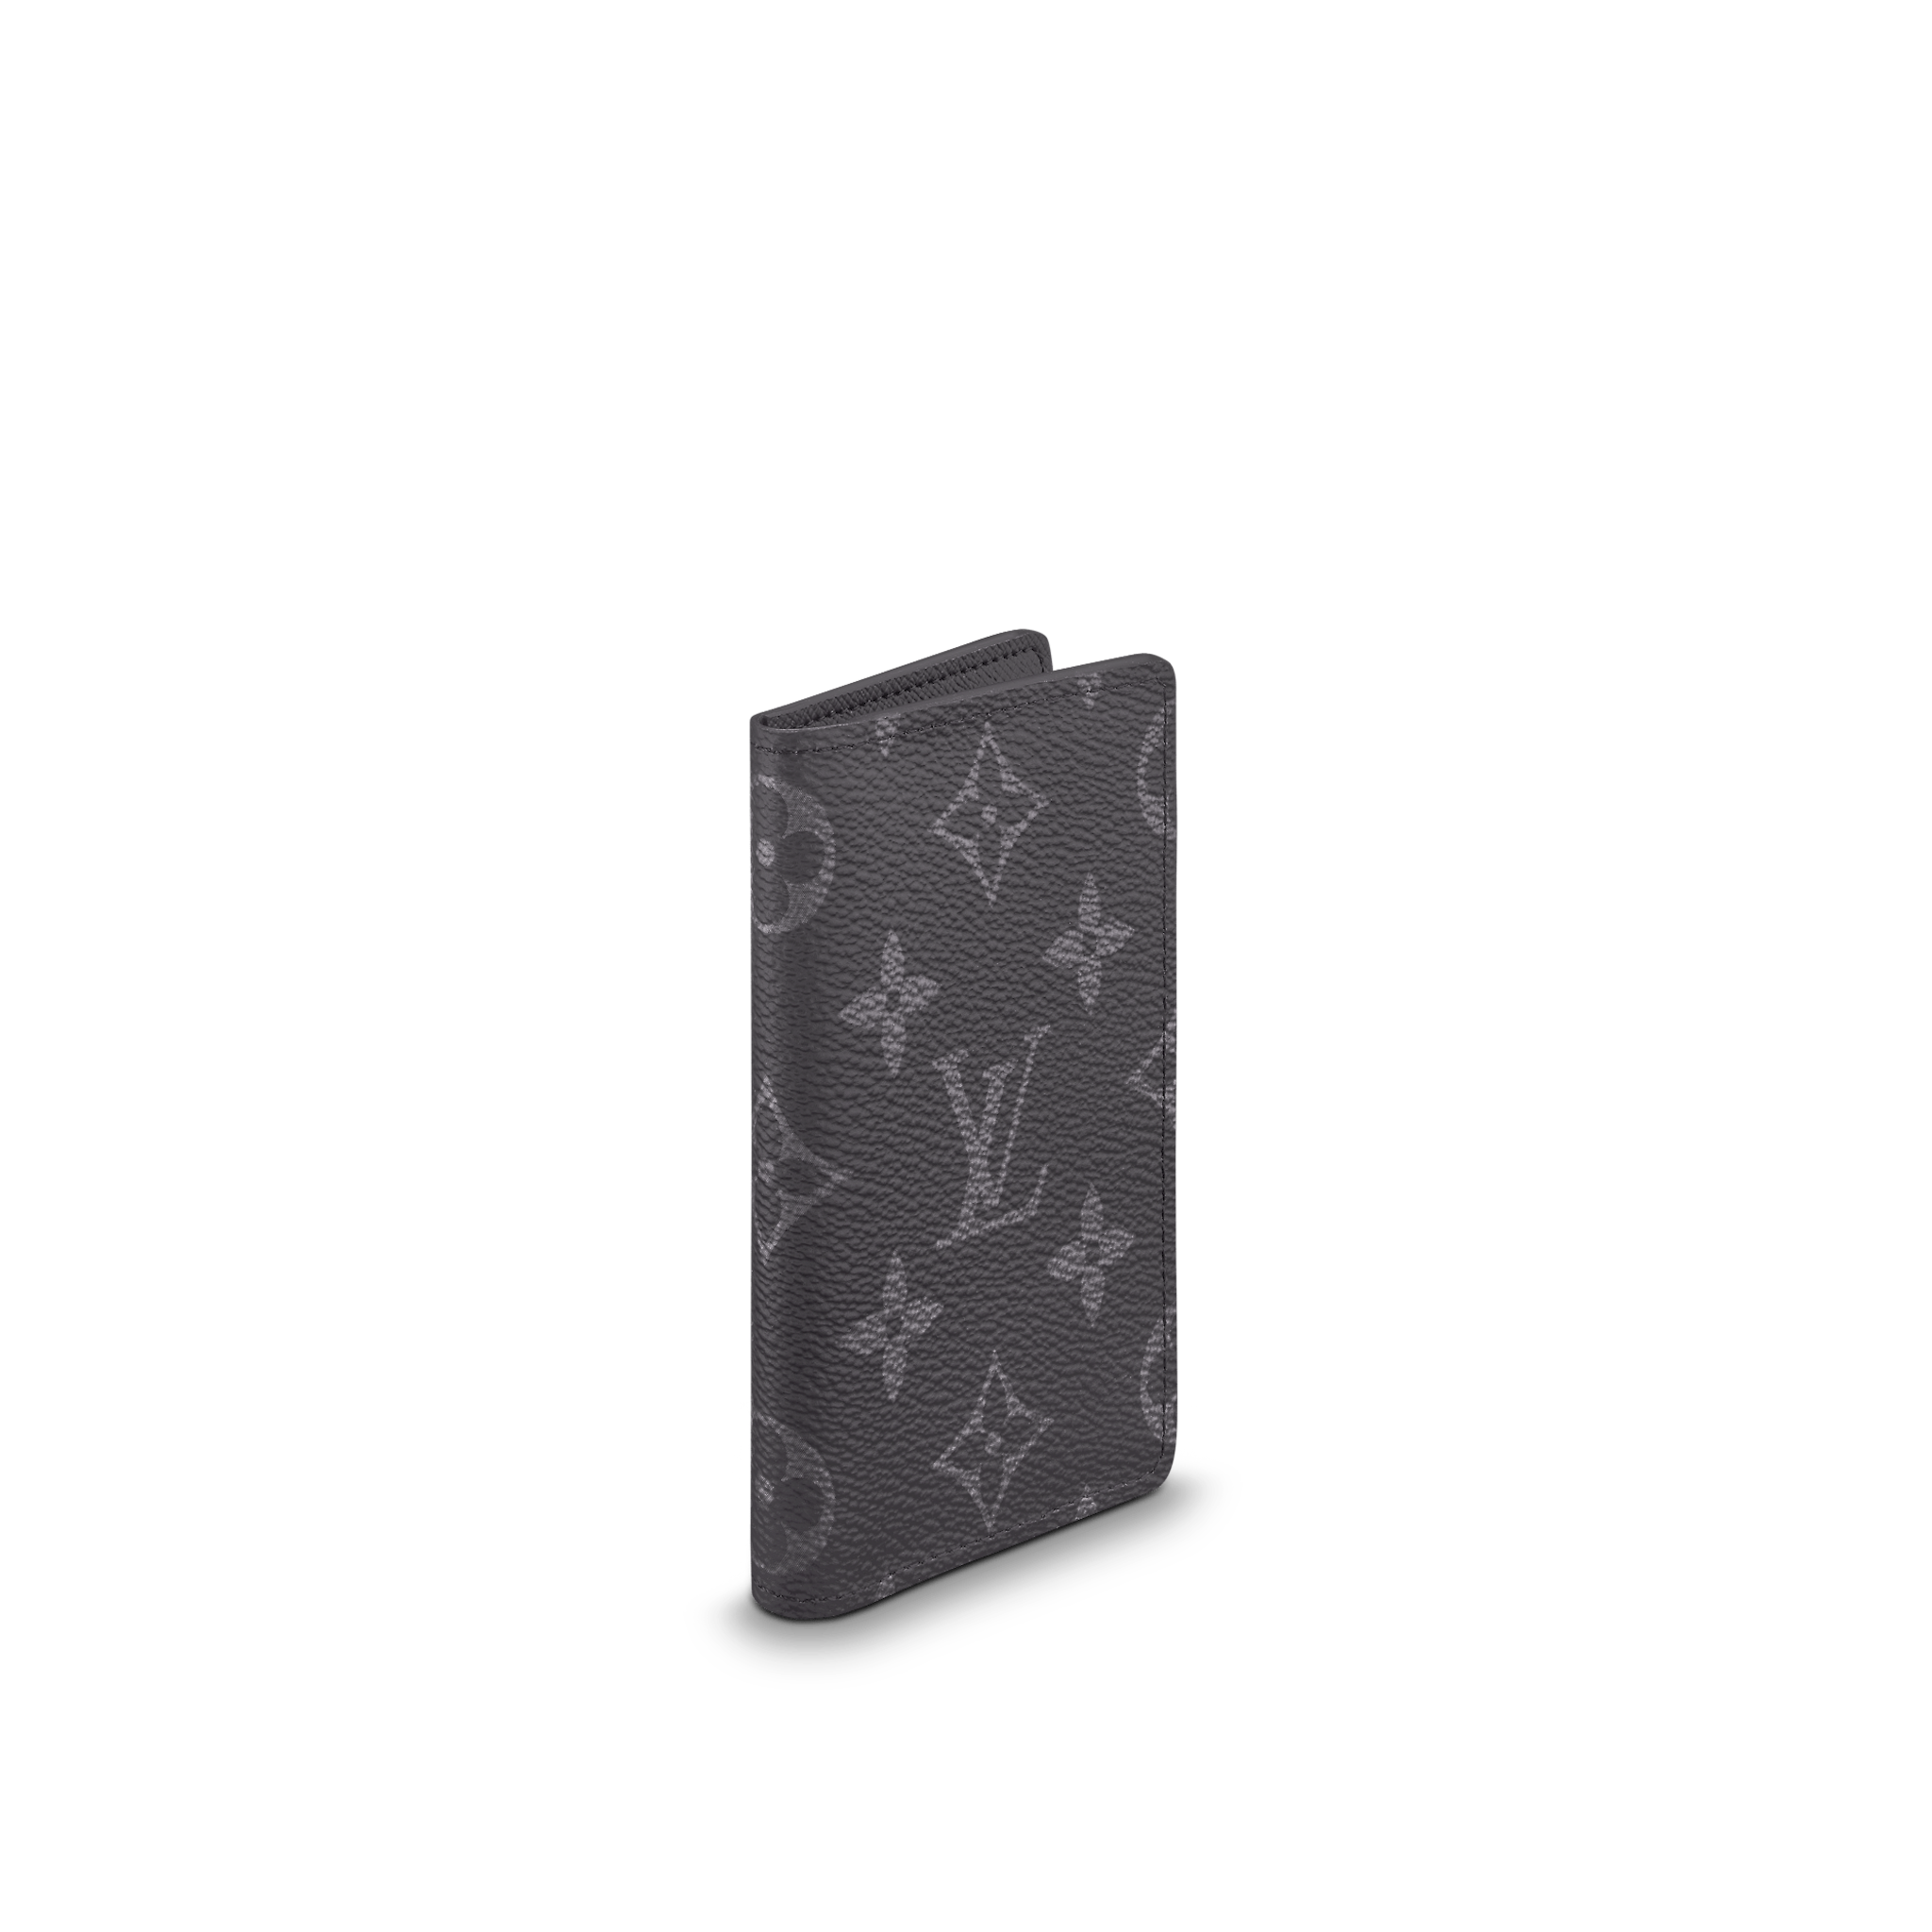 Louis Vuitton Pocket Organizer Monogram Eclipse M61696